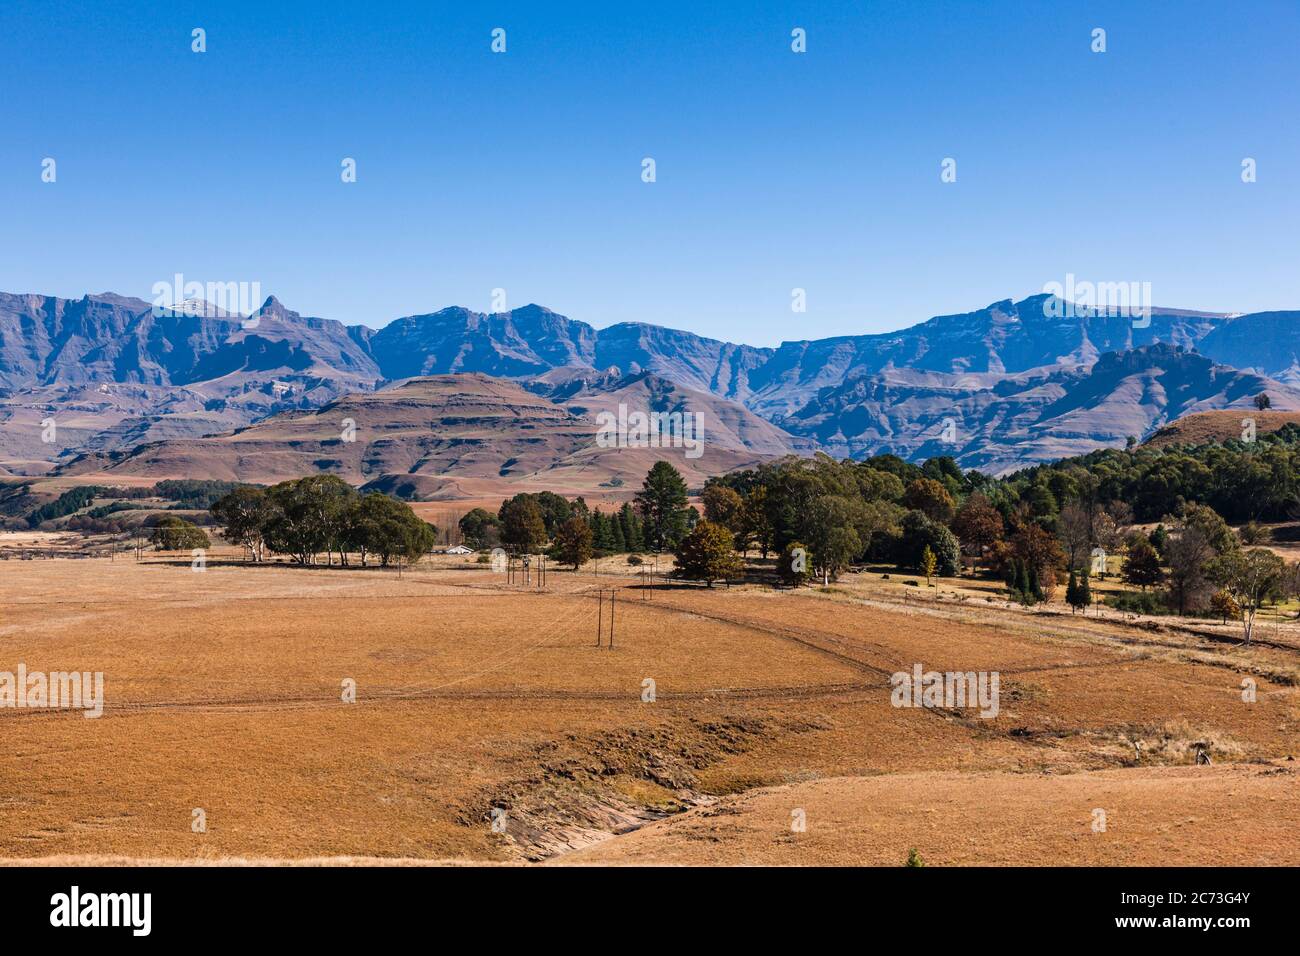 Drakensberg, vue sur les montagnes (Rhino Horn Peak), Château de jardin, région sauvage de Mkhomazi, KwaZulu-Natal, Afrique du Sud, Afrique Banque D'Images